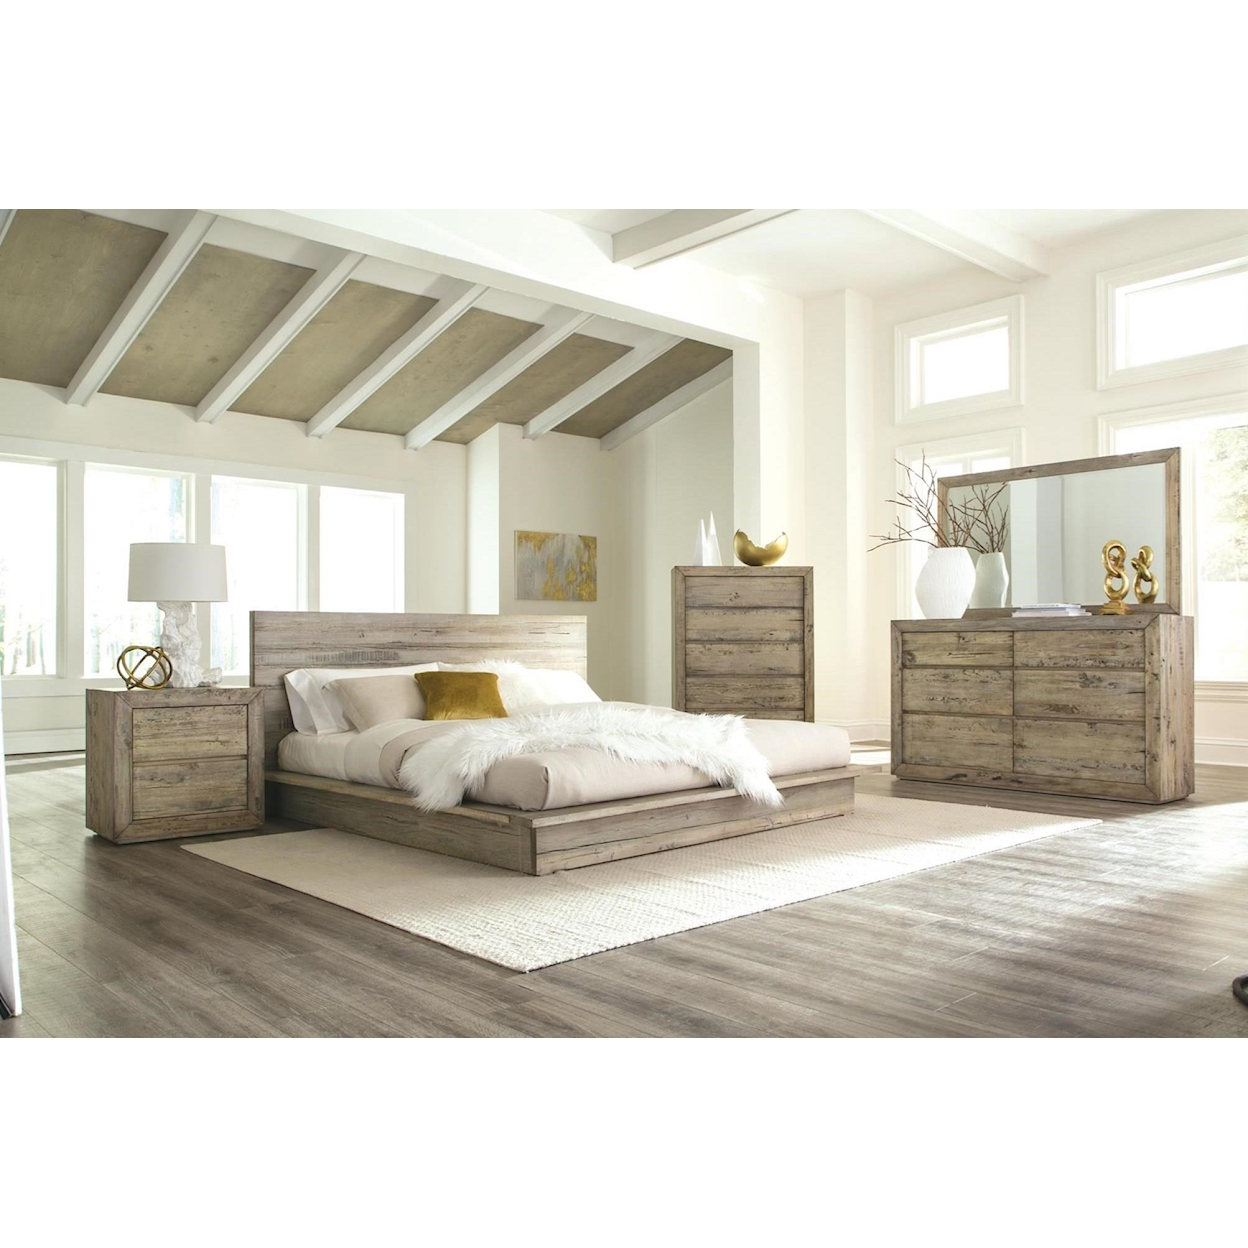 Napa Furniture Design Renewal 6-Drawer Dresser